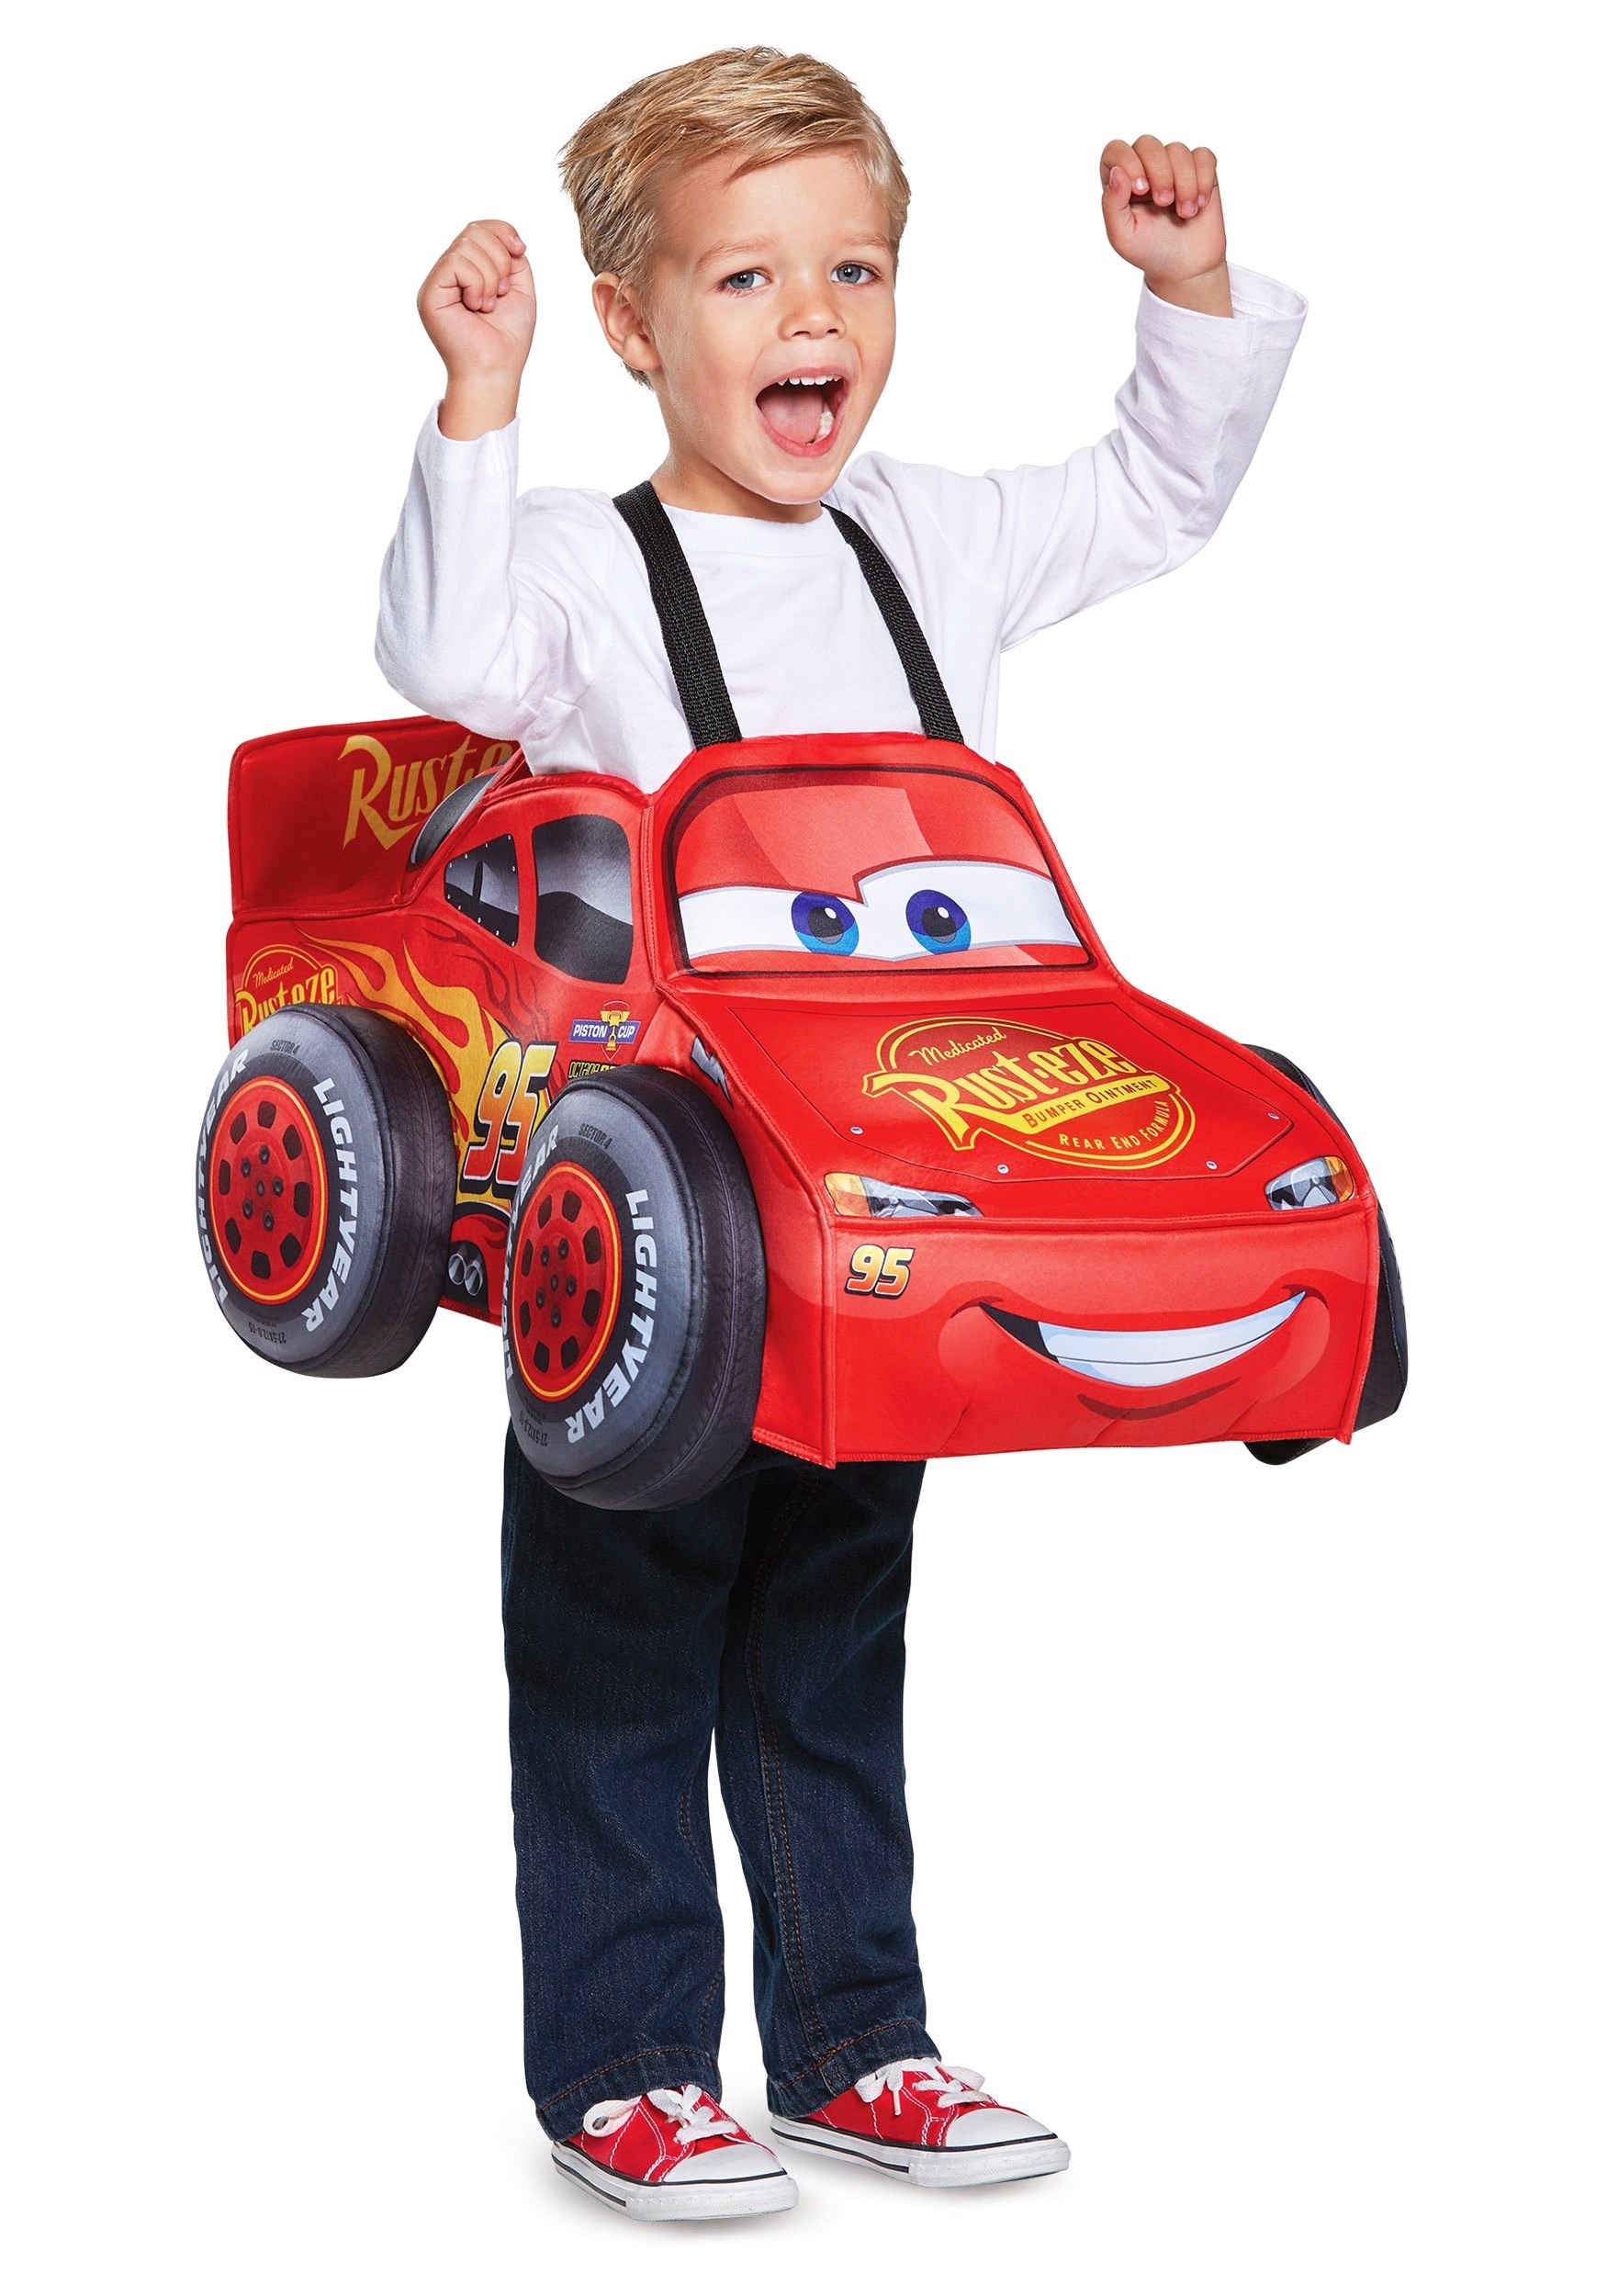 Coolest Homemade Lightning McQueen Race Car Costume  Lightning mcqueen  costume, Race car costume, Car costume